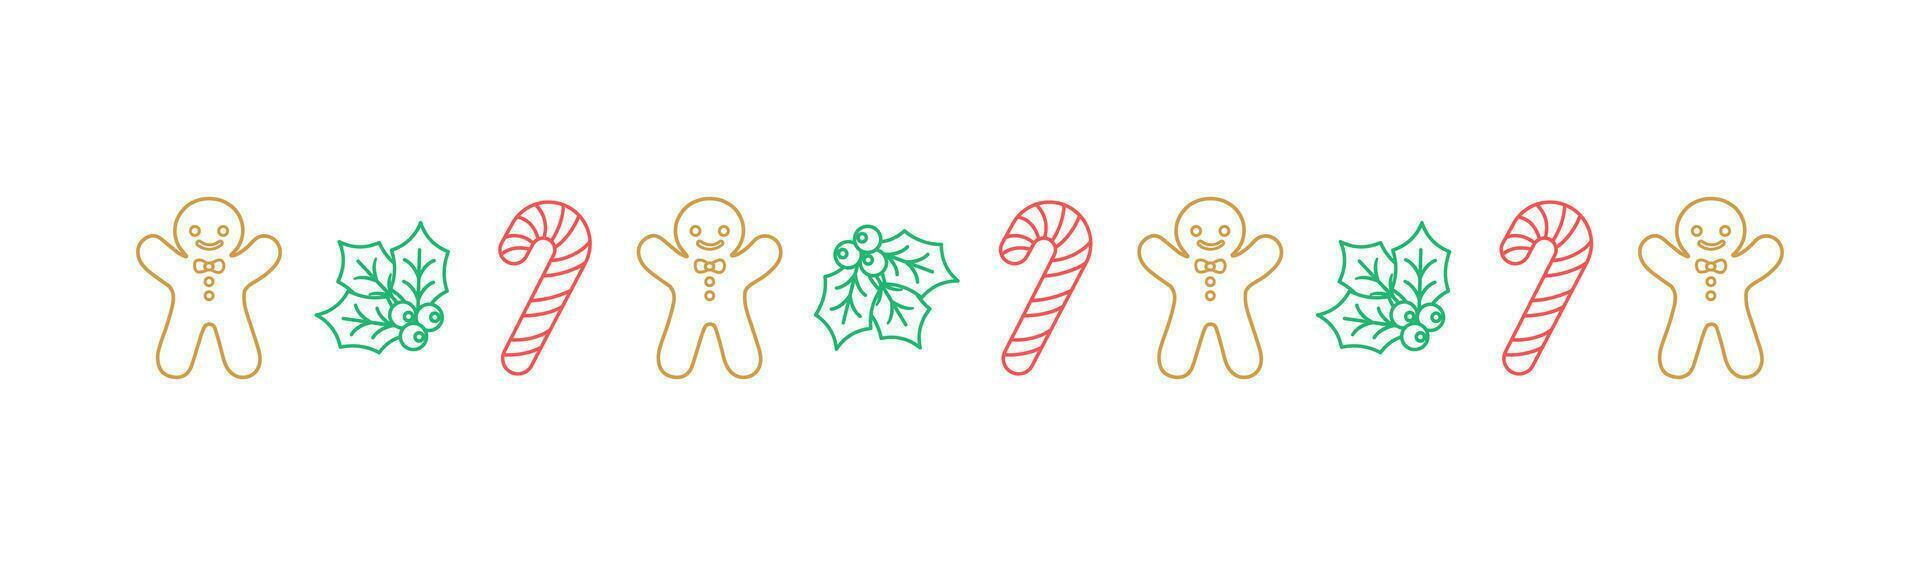 Kerstmis themed decoratief grens en tekst verdeler, peperkoek koekjes en snoep riet patroon schets tekening. vector illustratie.